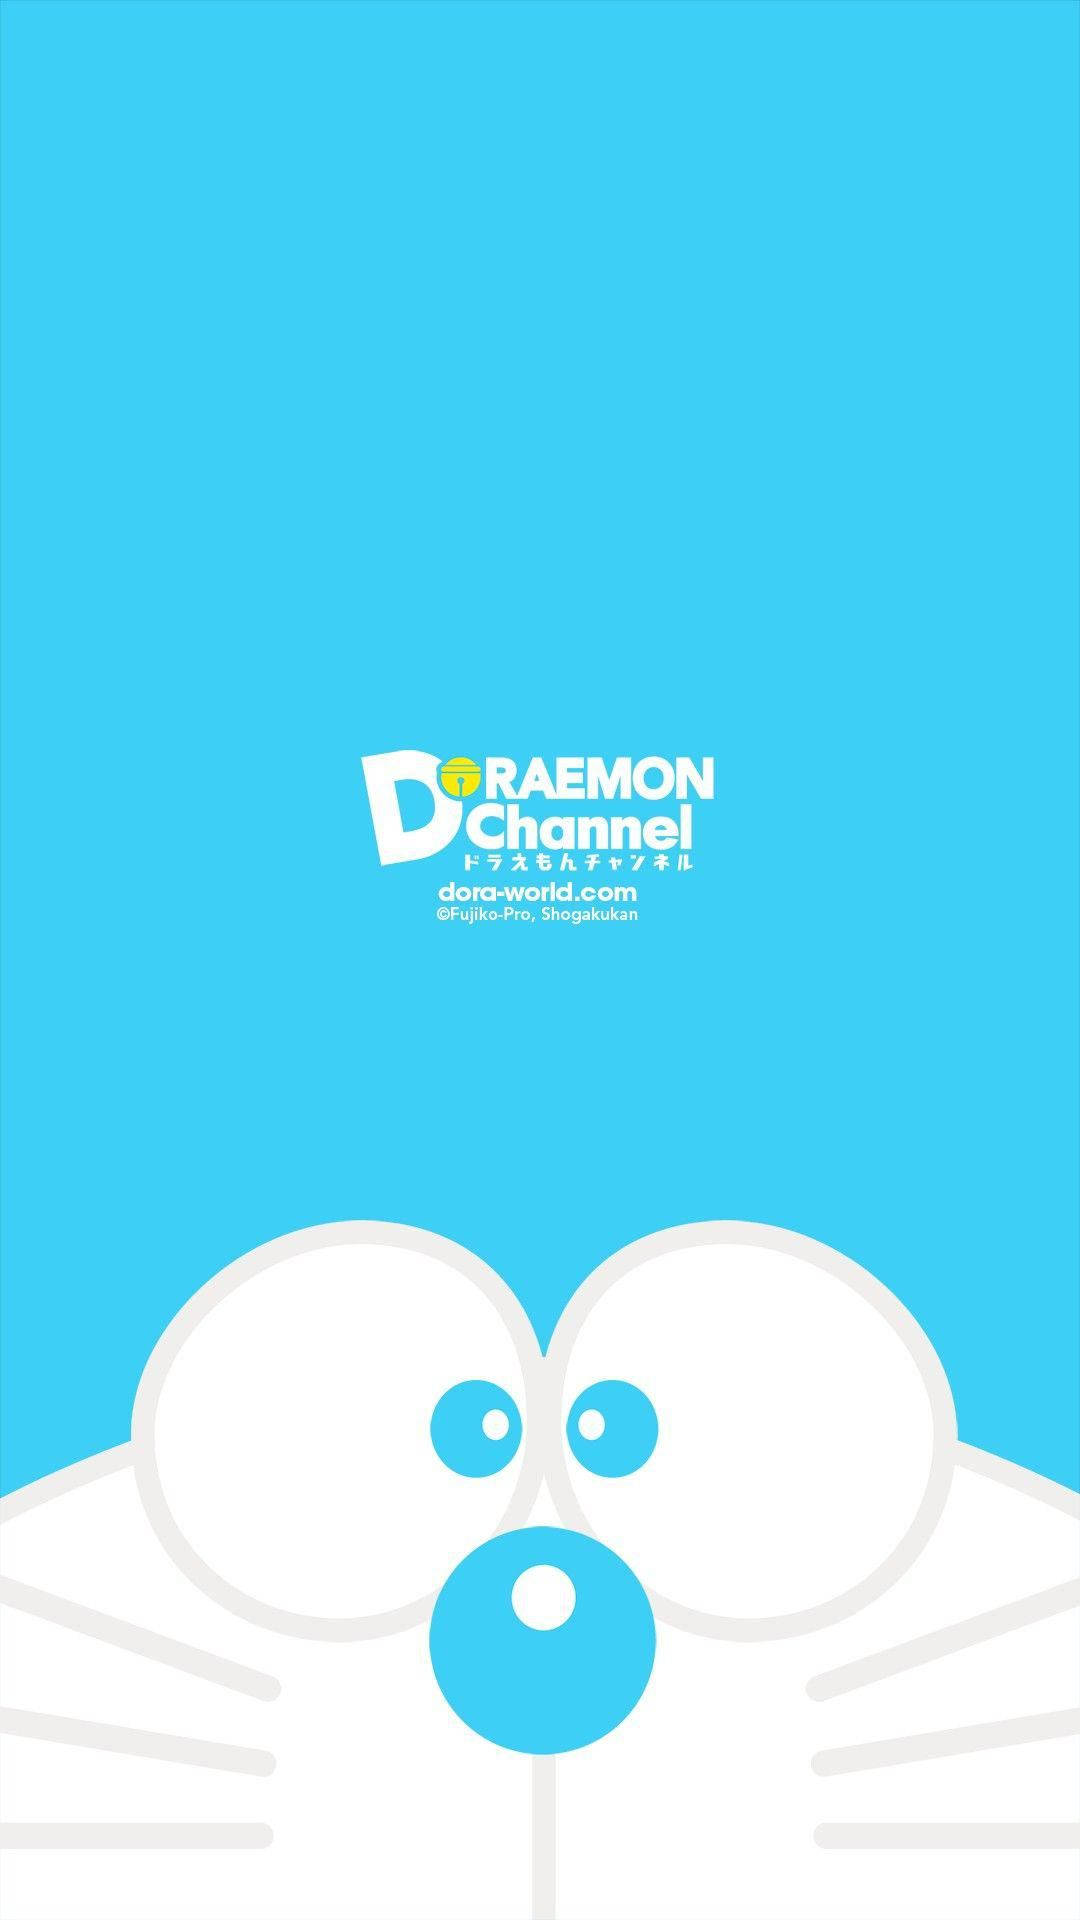 Minimalist Doraemon Iphone Digital Art Picture